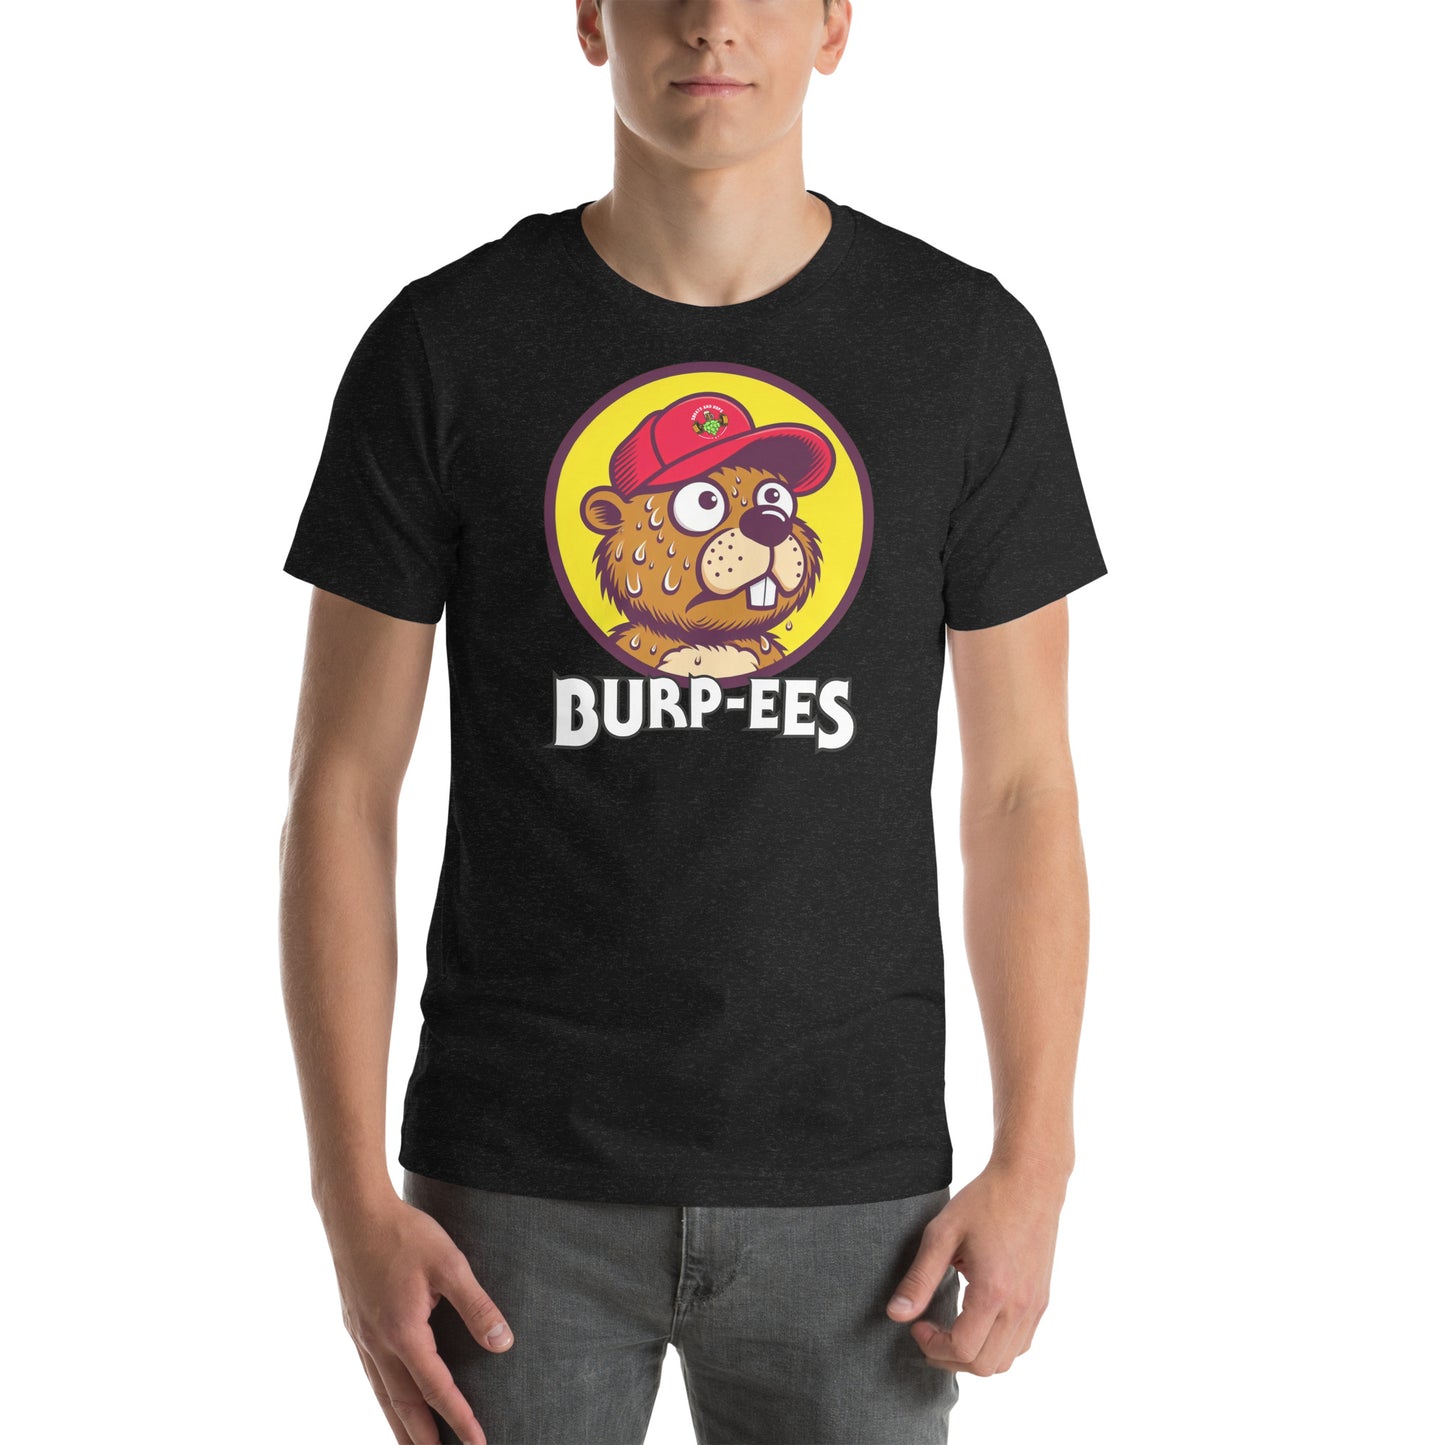 Burp-ee's t-shirt